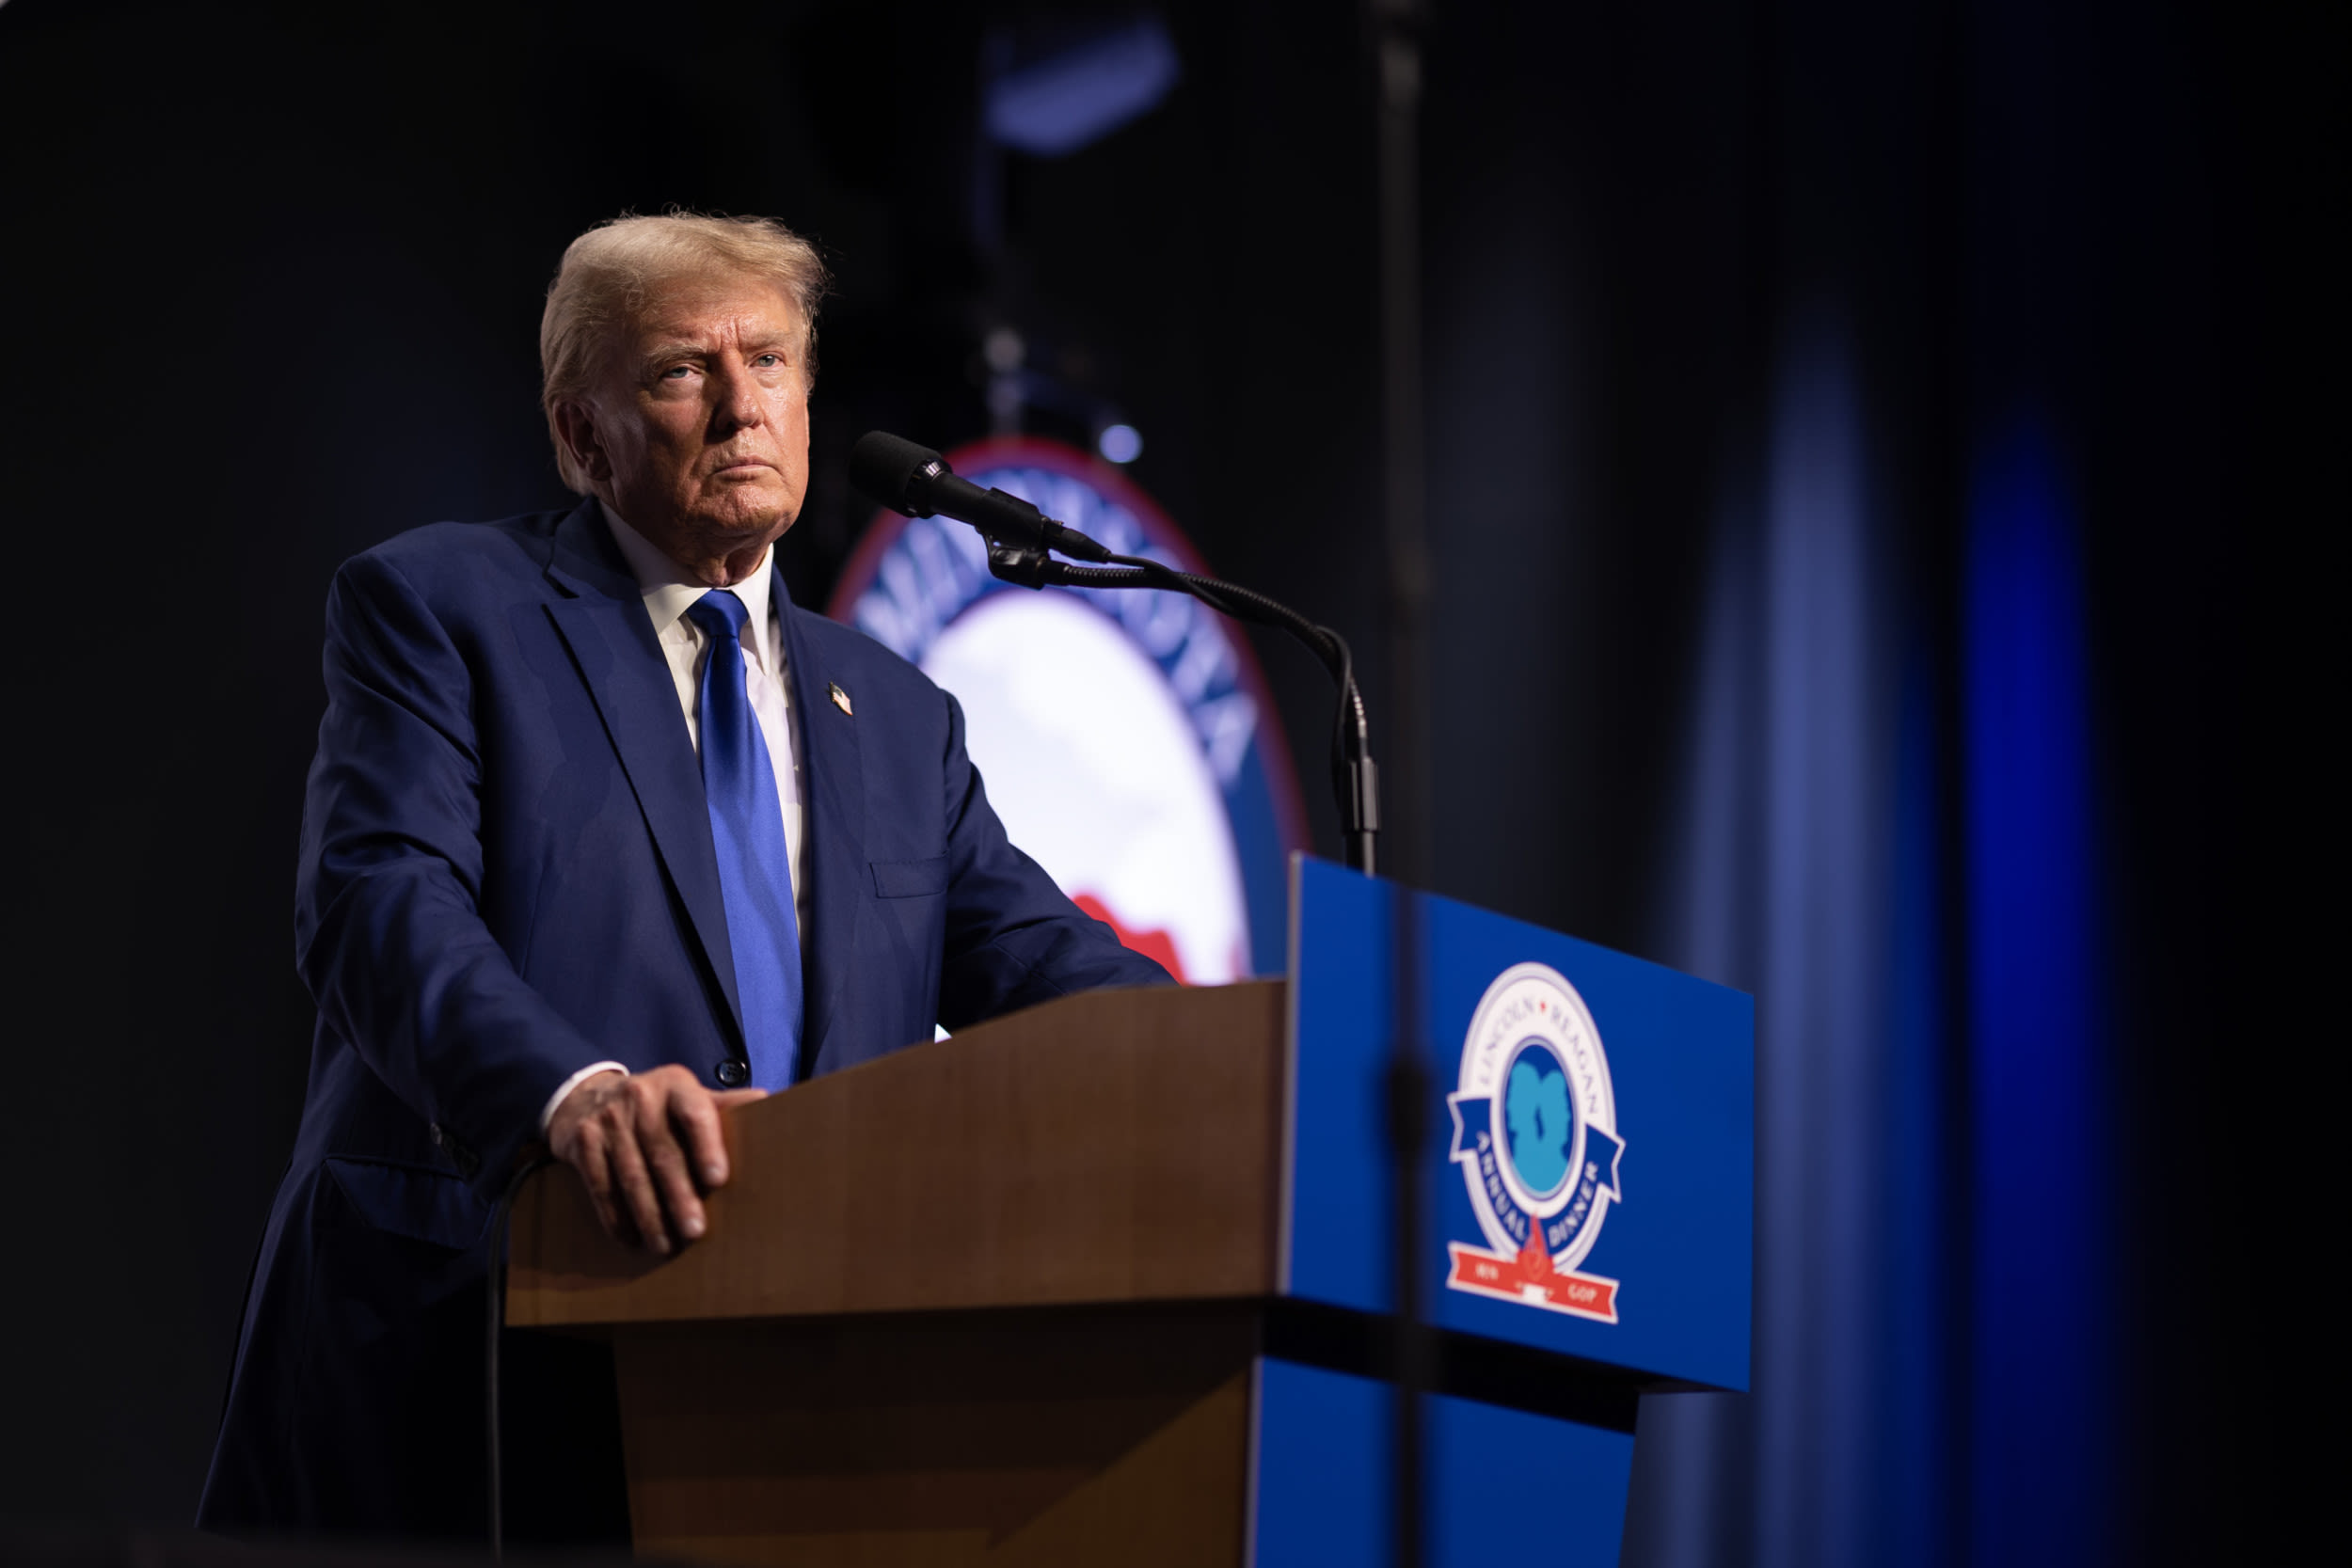 Donald Trump blames "crappy contractor" after onstage wobble